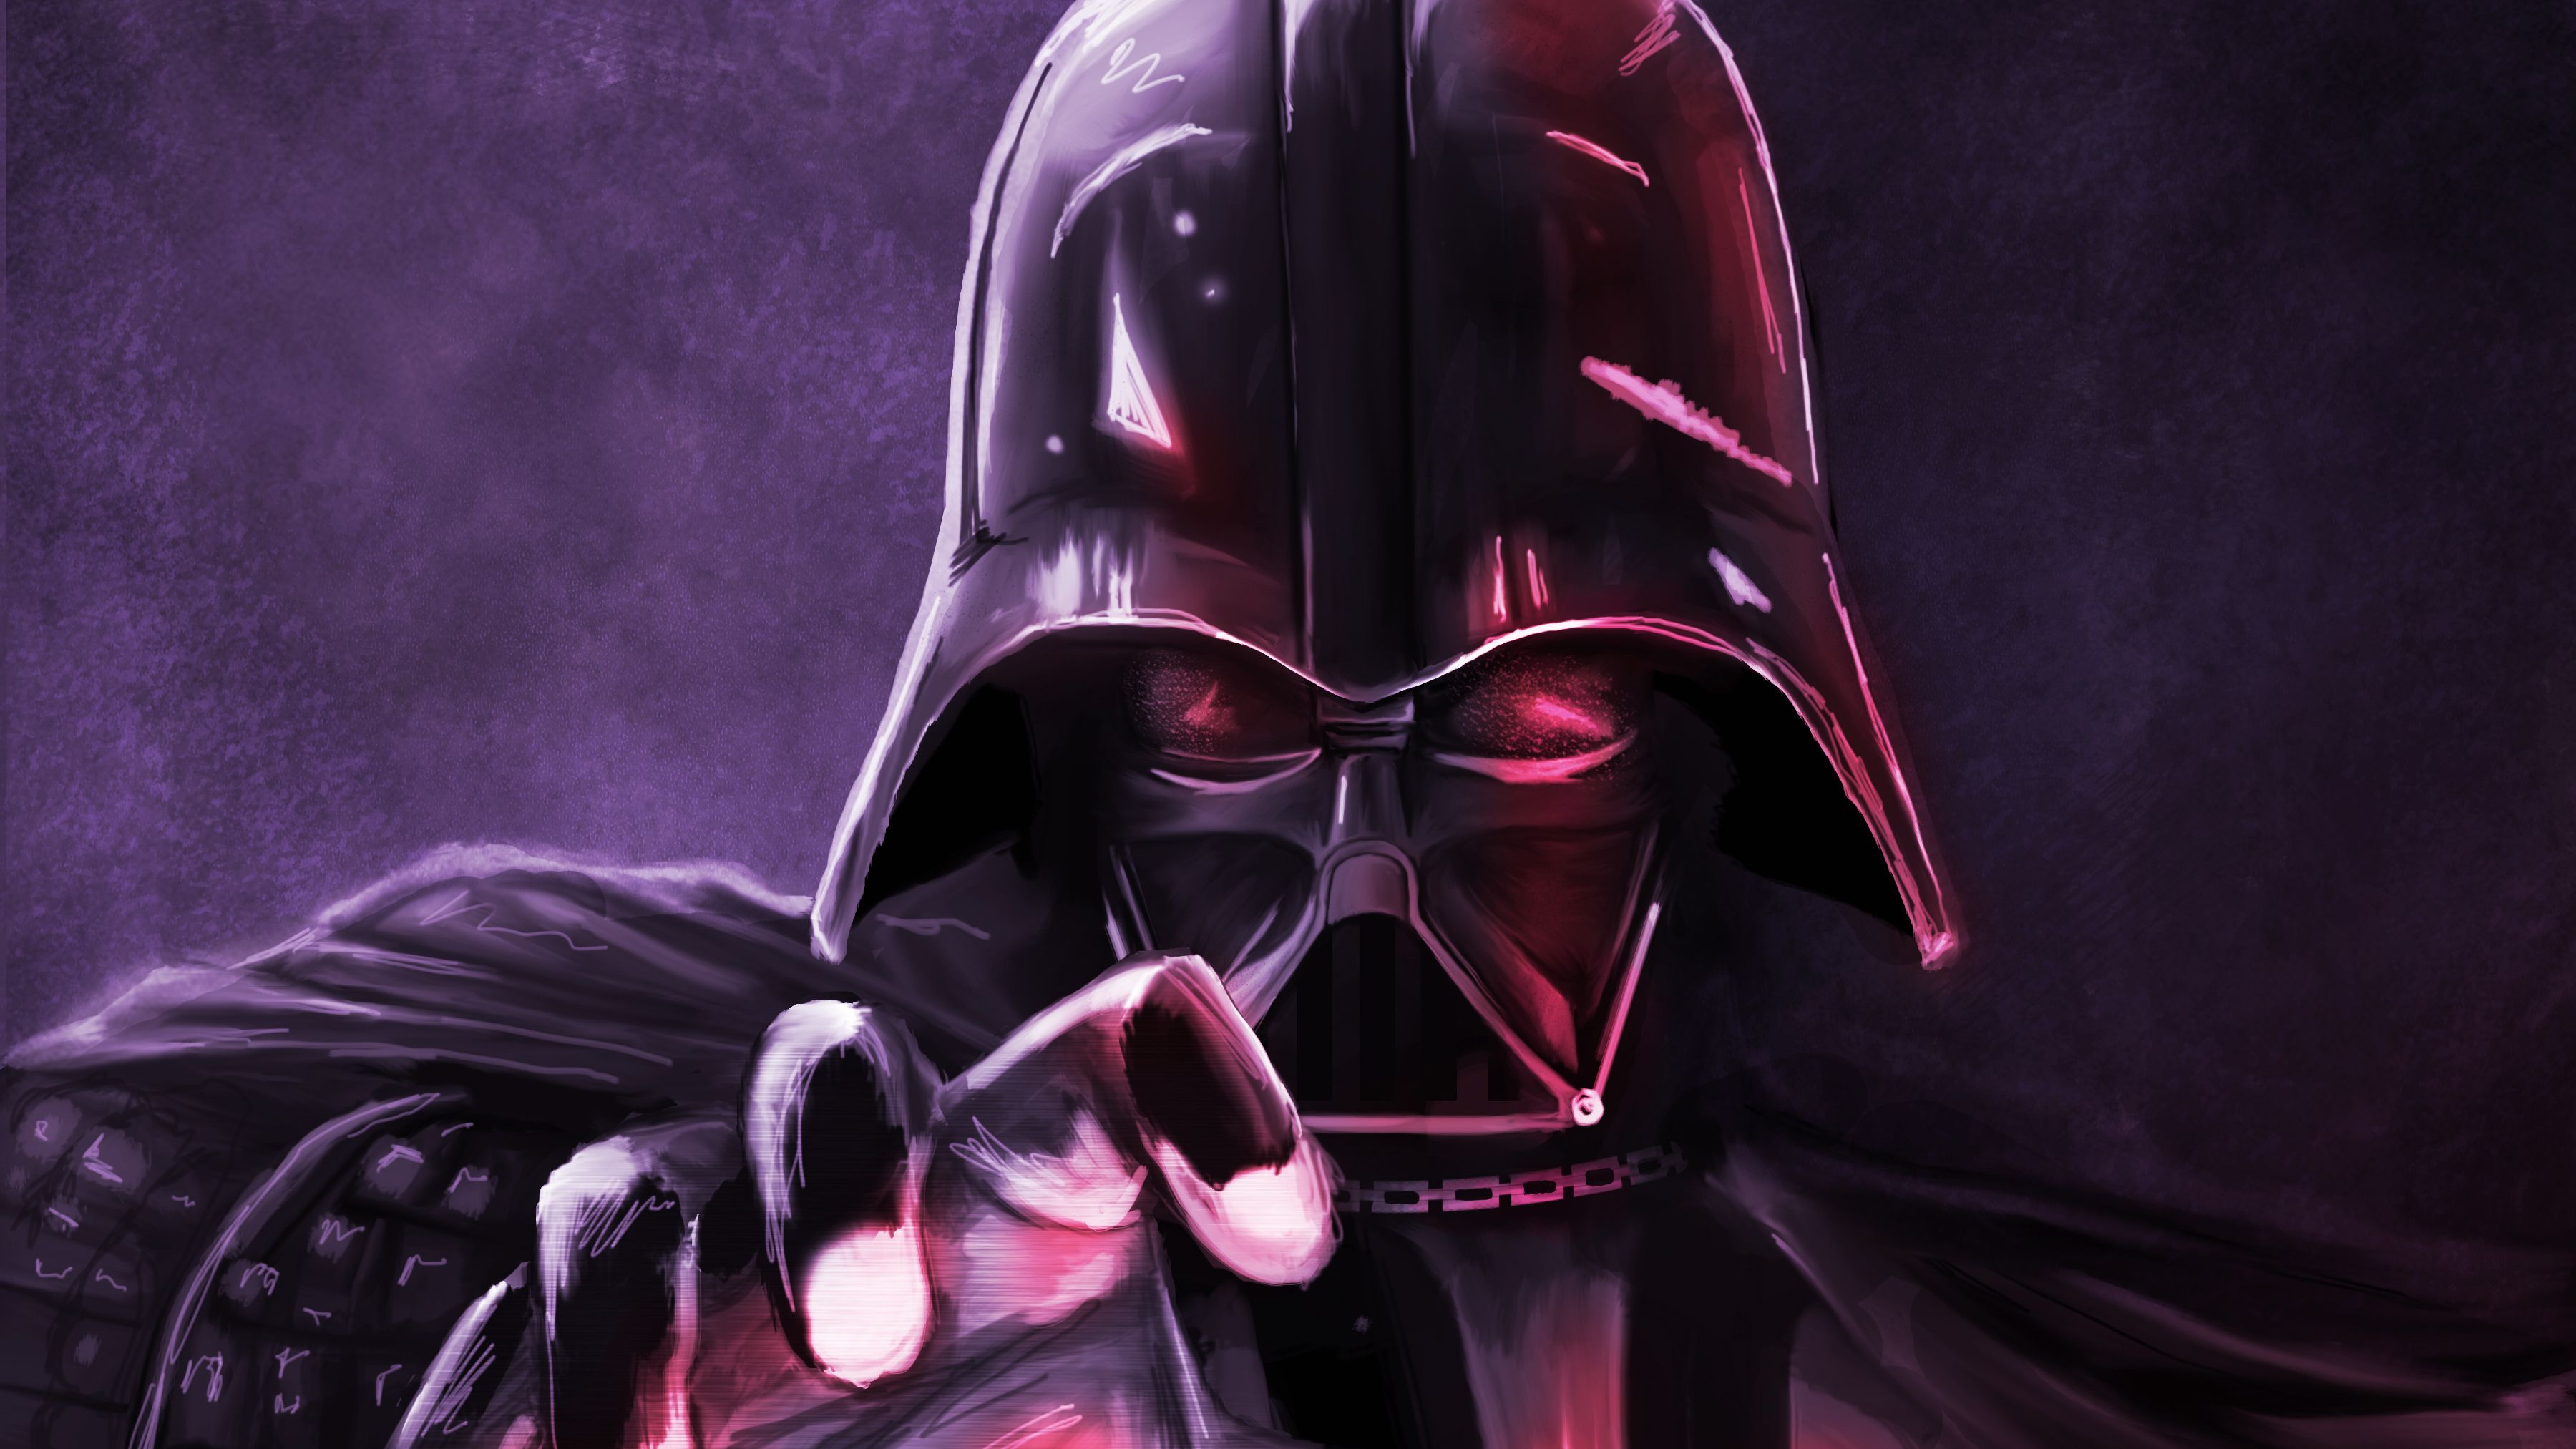 Darth Vader Wallpaper Free Darth Vader Background